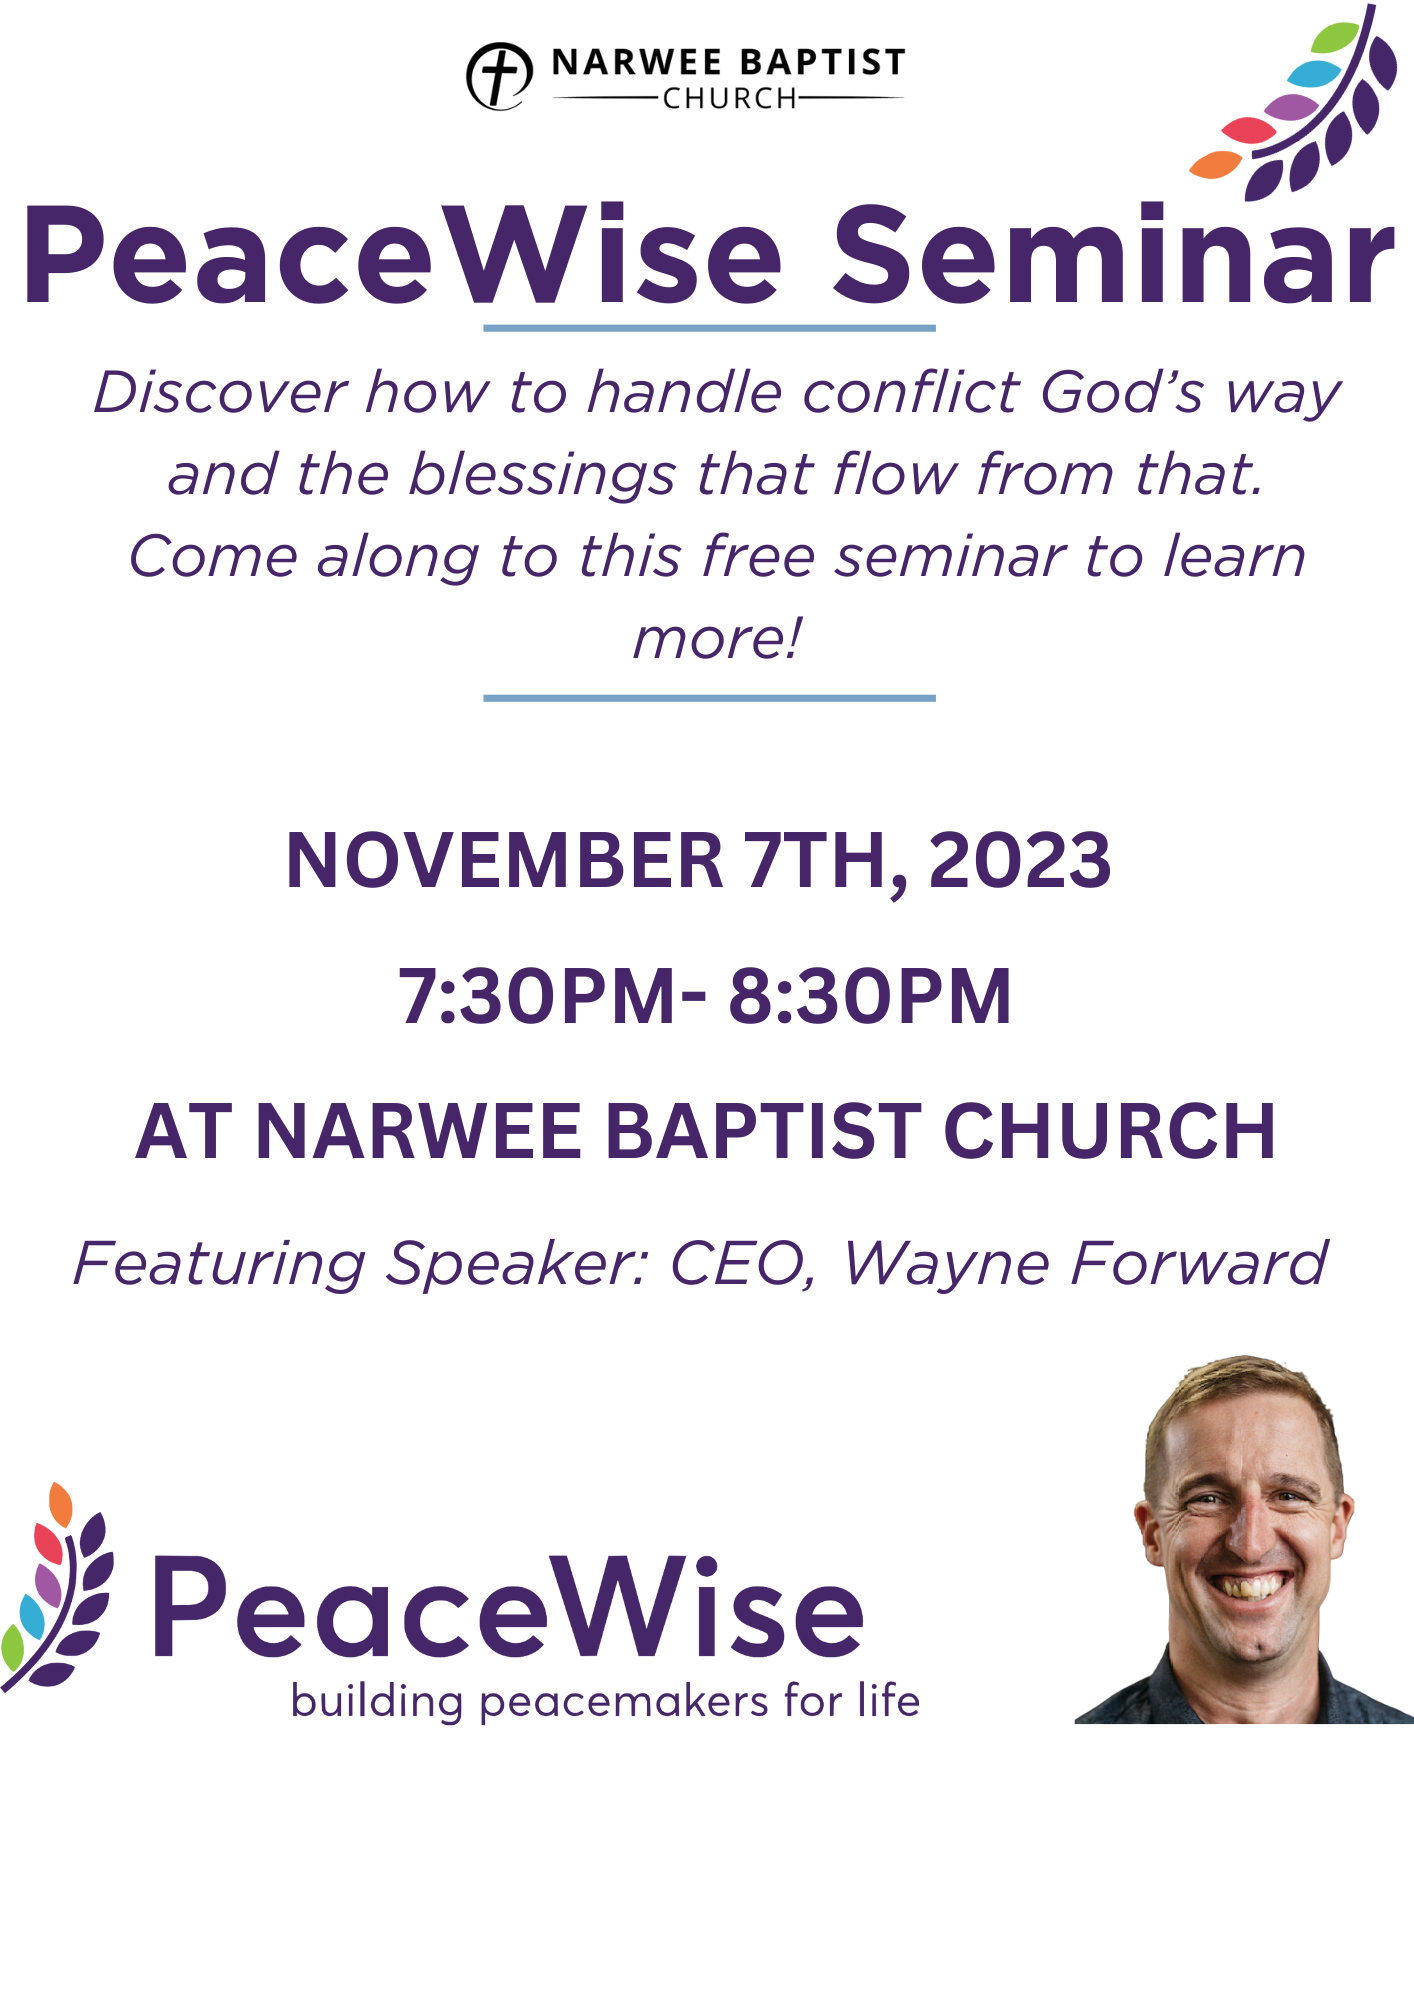 Peacewise Seminar